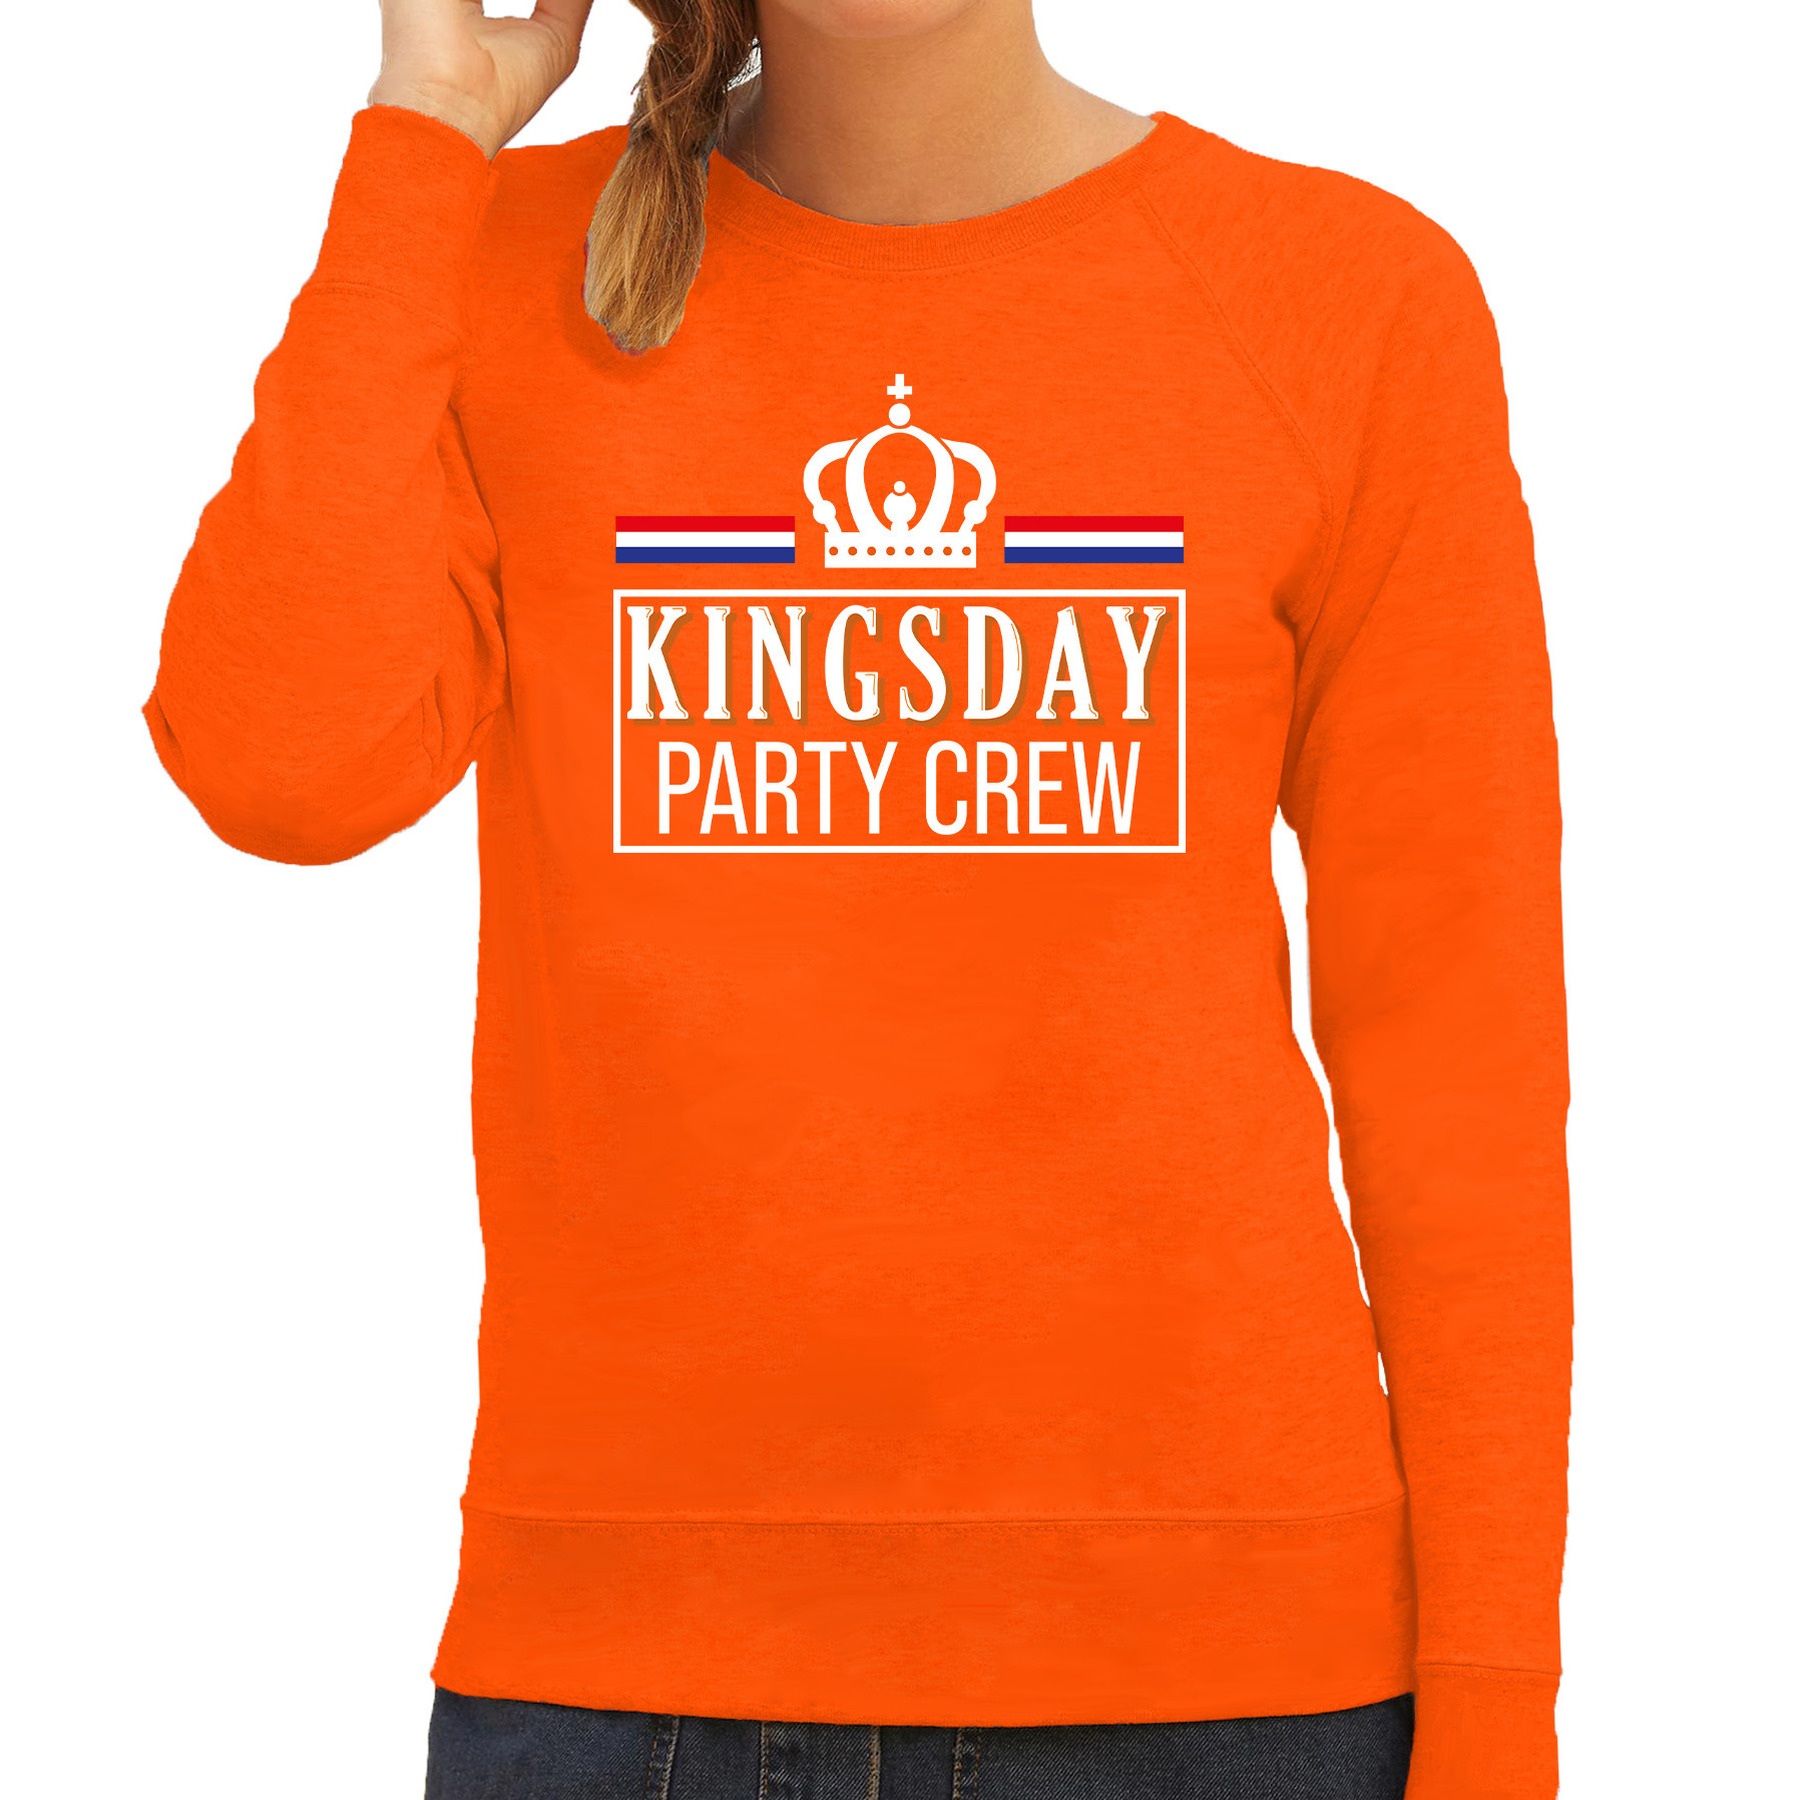 Kingsday party crew sweater oranje met witte letters voor dames Koningsdag truien